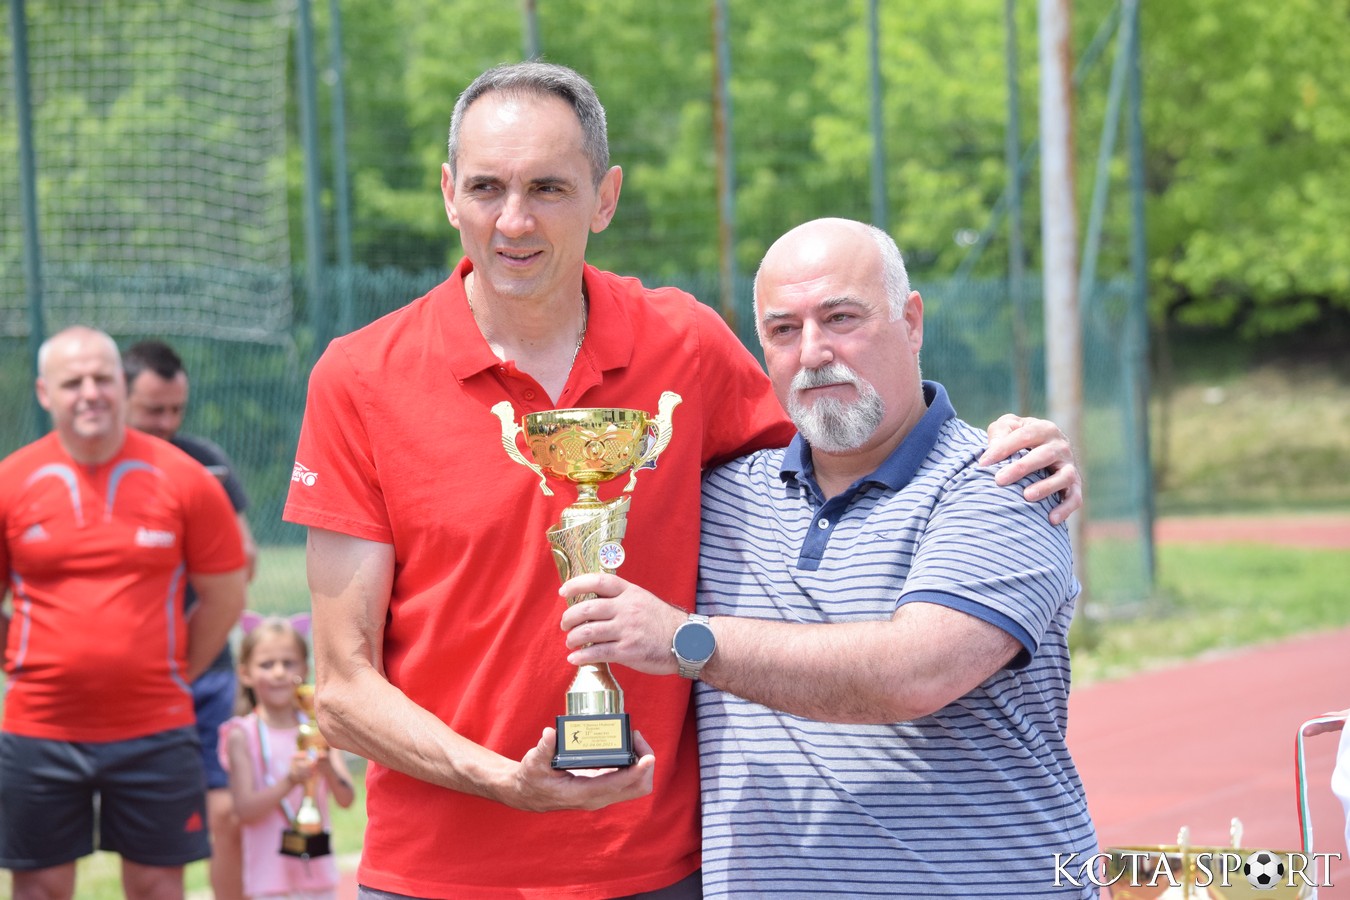 turnir sveti nikola (58)